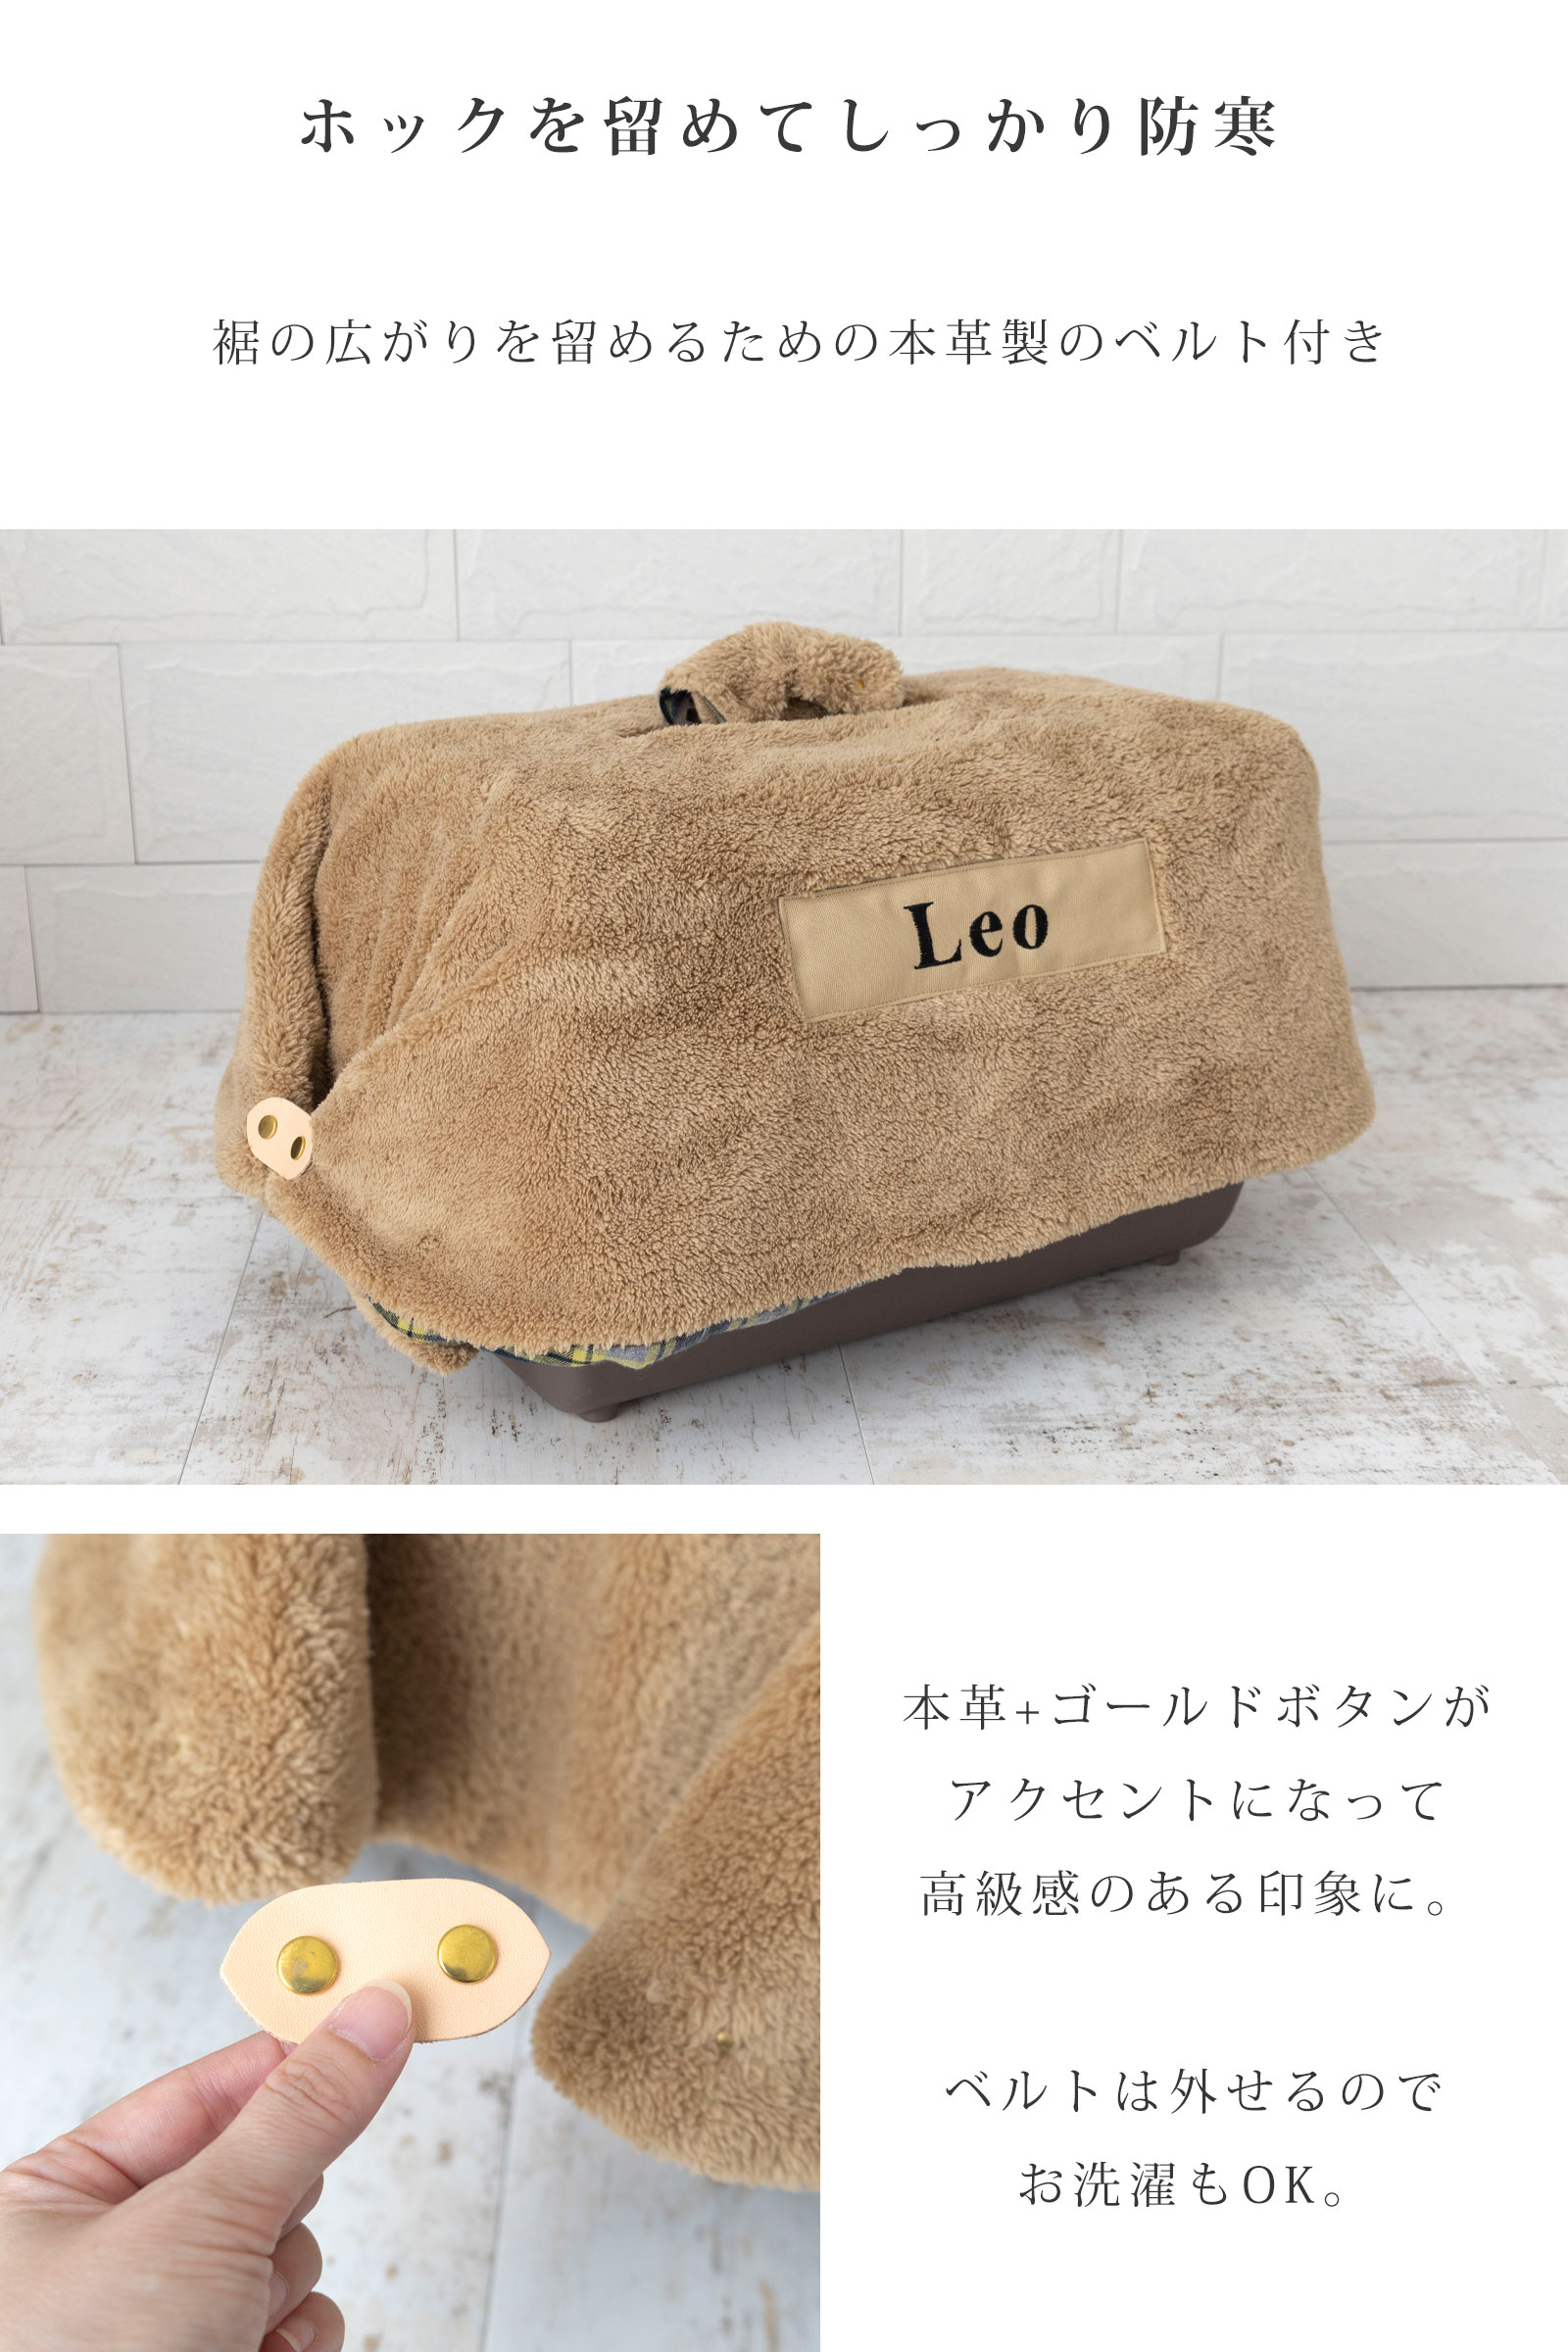 日本製 キャリー用カバー キャリーケース 犬 猫 防寒 冬 本革製のベルト付き